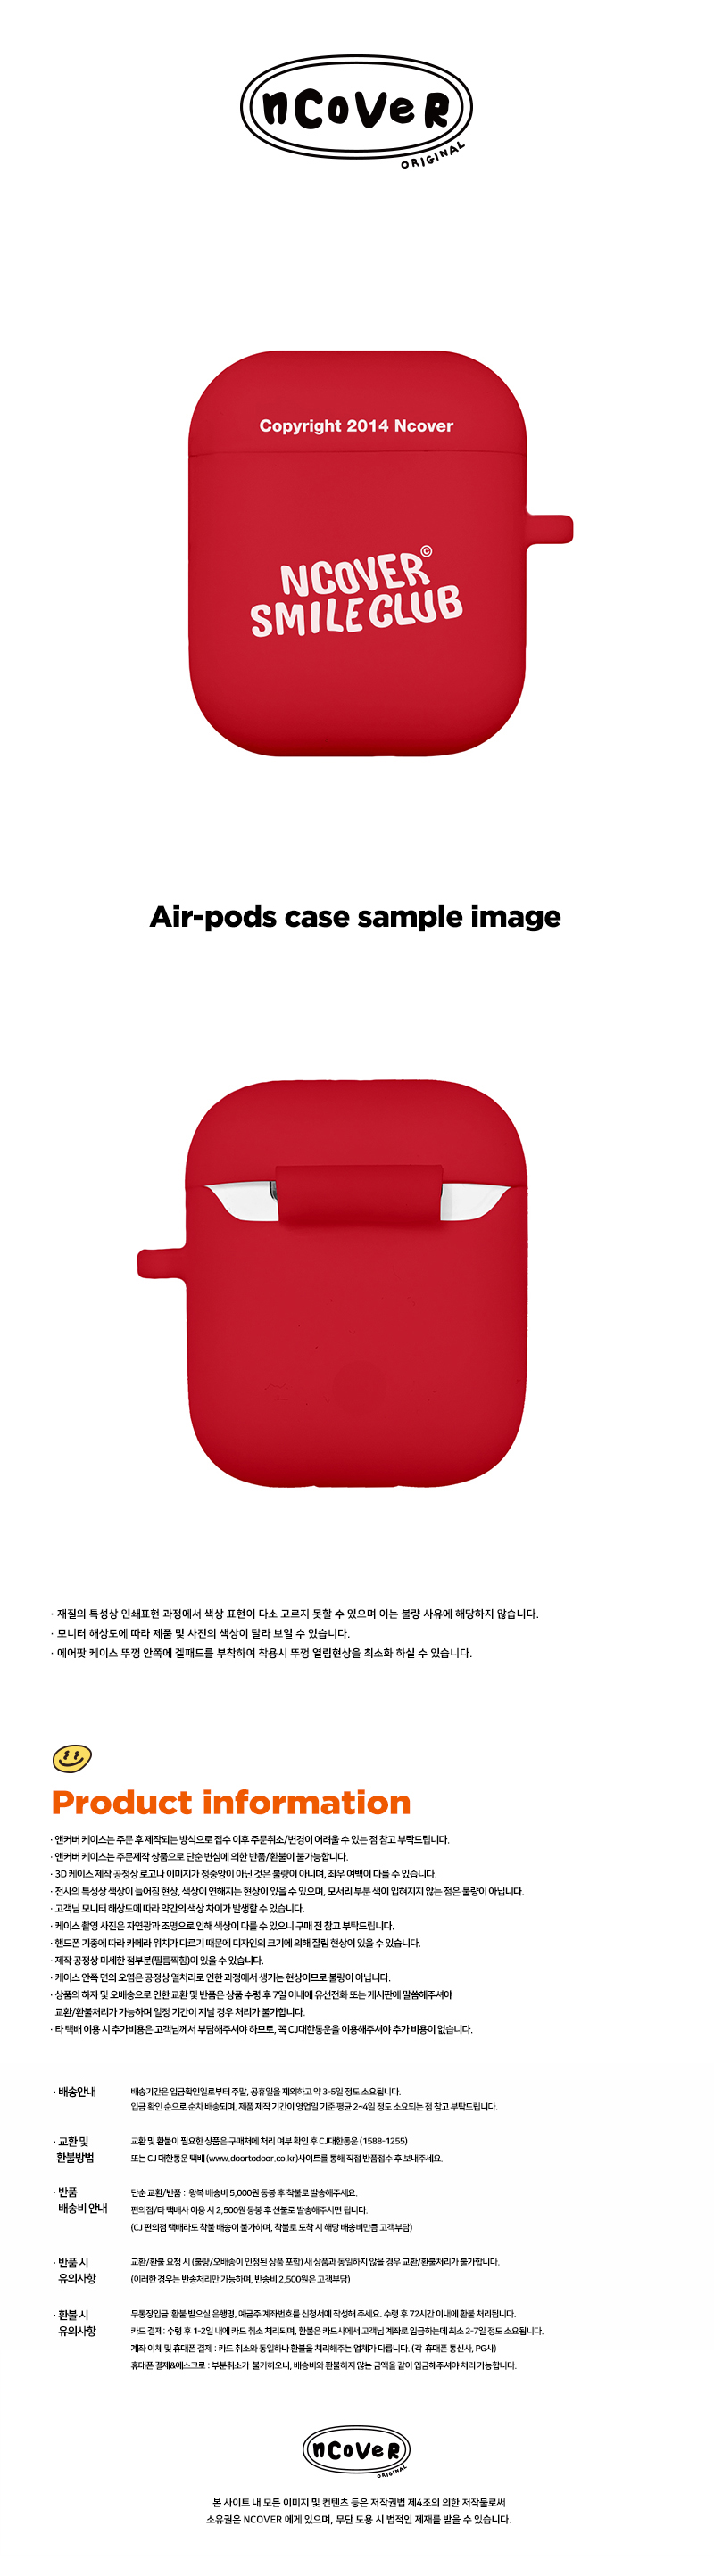 [호환용] Smile club-red(airpods jelly)  15,000원 - 바이인터내셔널주식회사 디지털, 이어폰/헤드폰, 이어폰/헤드폰 액세서리, 에어팟/에어팟프로 케이스 바보사랑 [호환용] Smile club-red(airpods jelly)  15,000원 - 바이인터내셔널주식회사 디지털, 이어폰/헤드폰, 이어폰/헤드폰 액세서리, 에어팟/에어팟프로 케이스 바보사랑